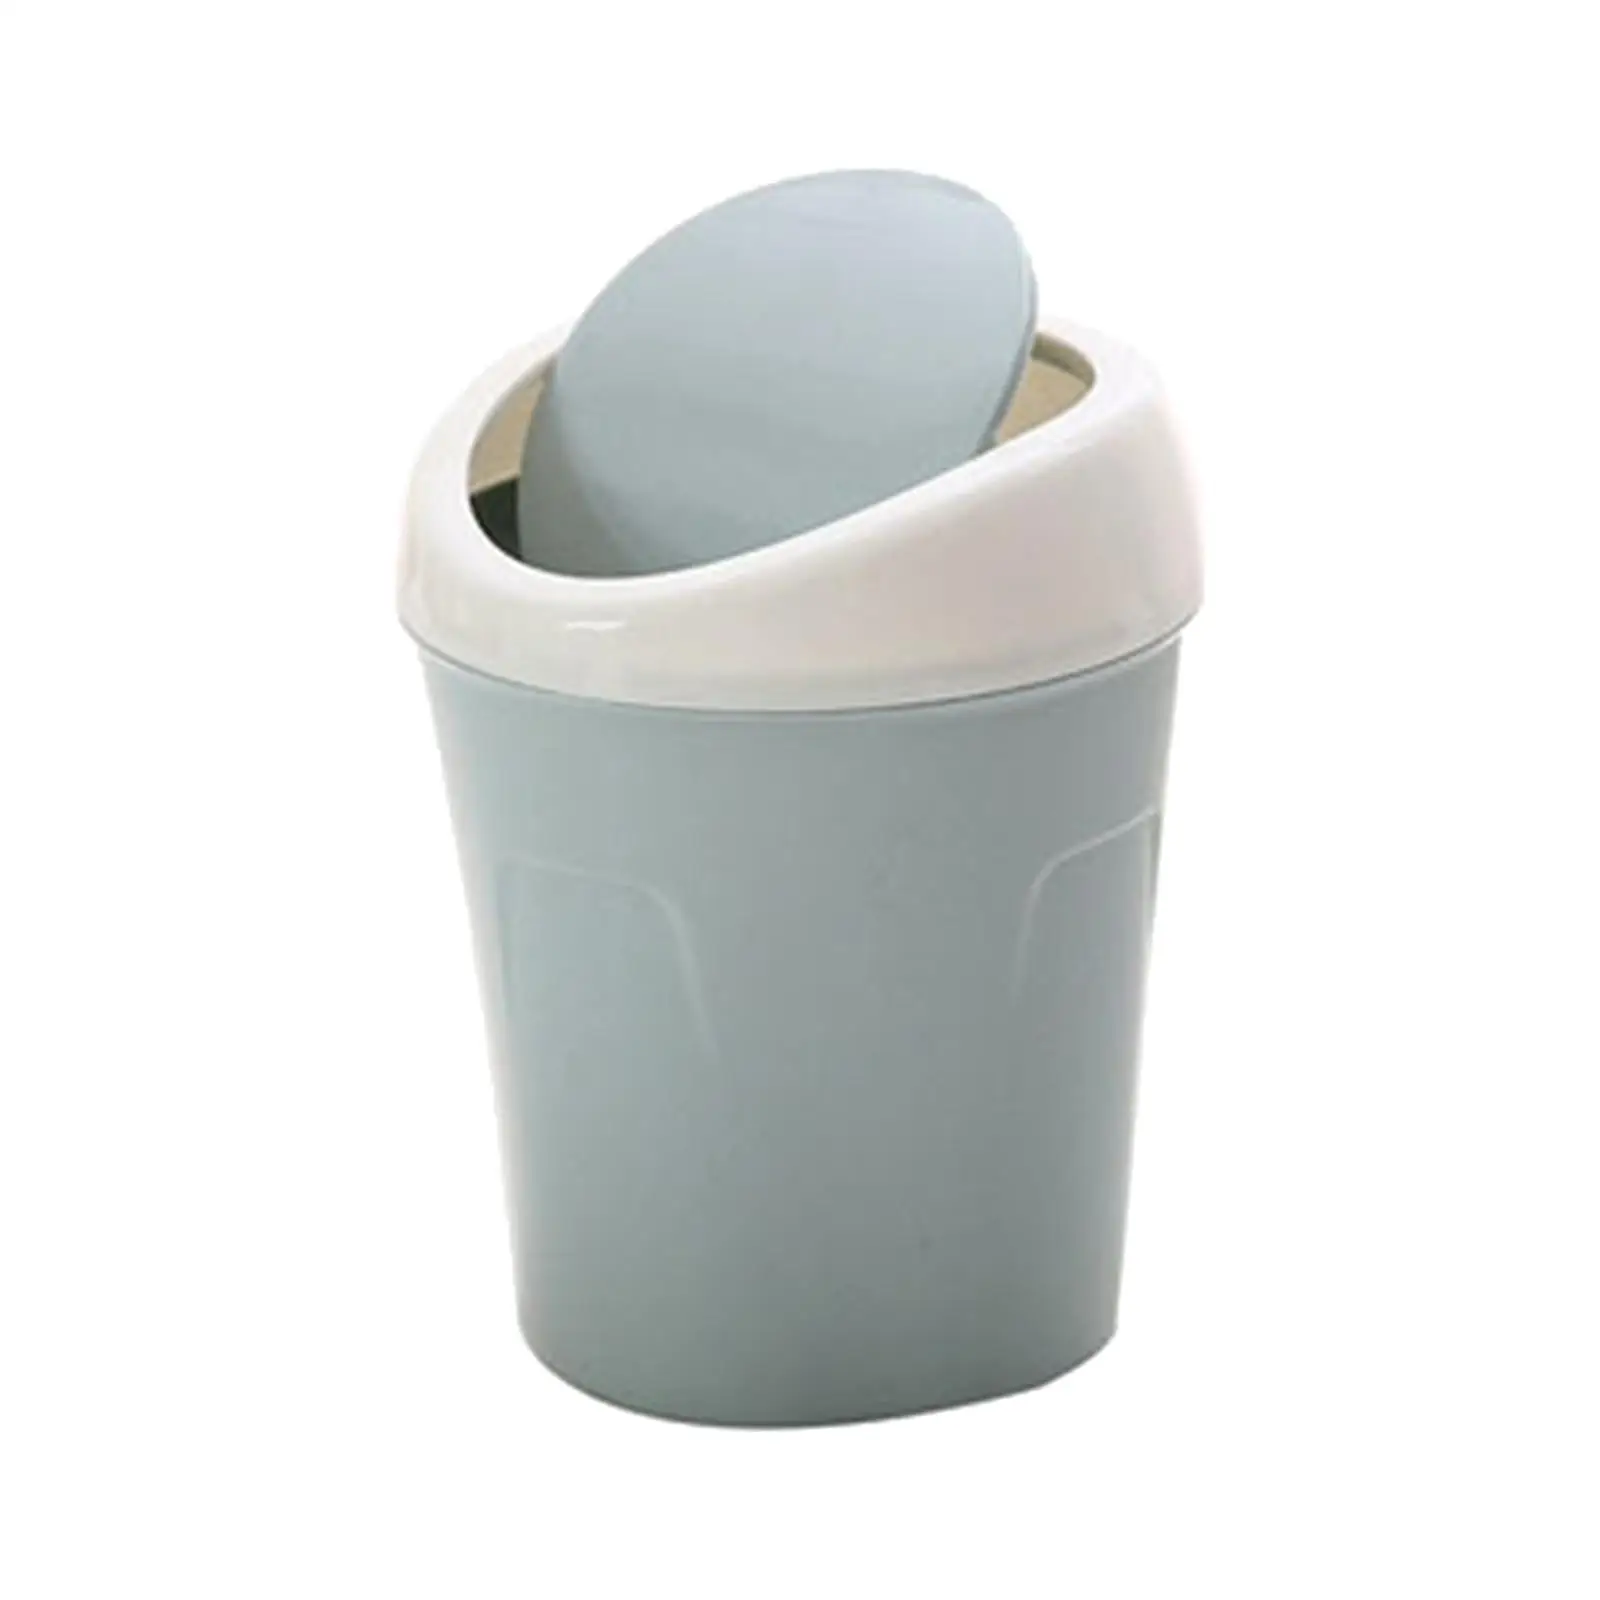 Garbage Bucket Storage Box with Lid Multipurpose for Desktop Indoor Dorm